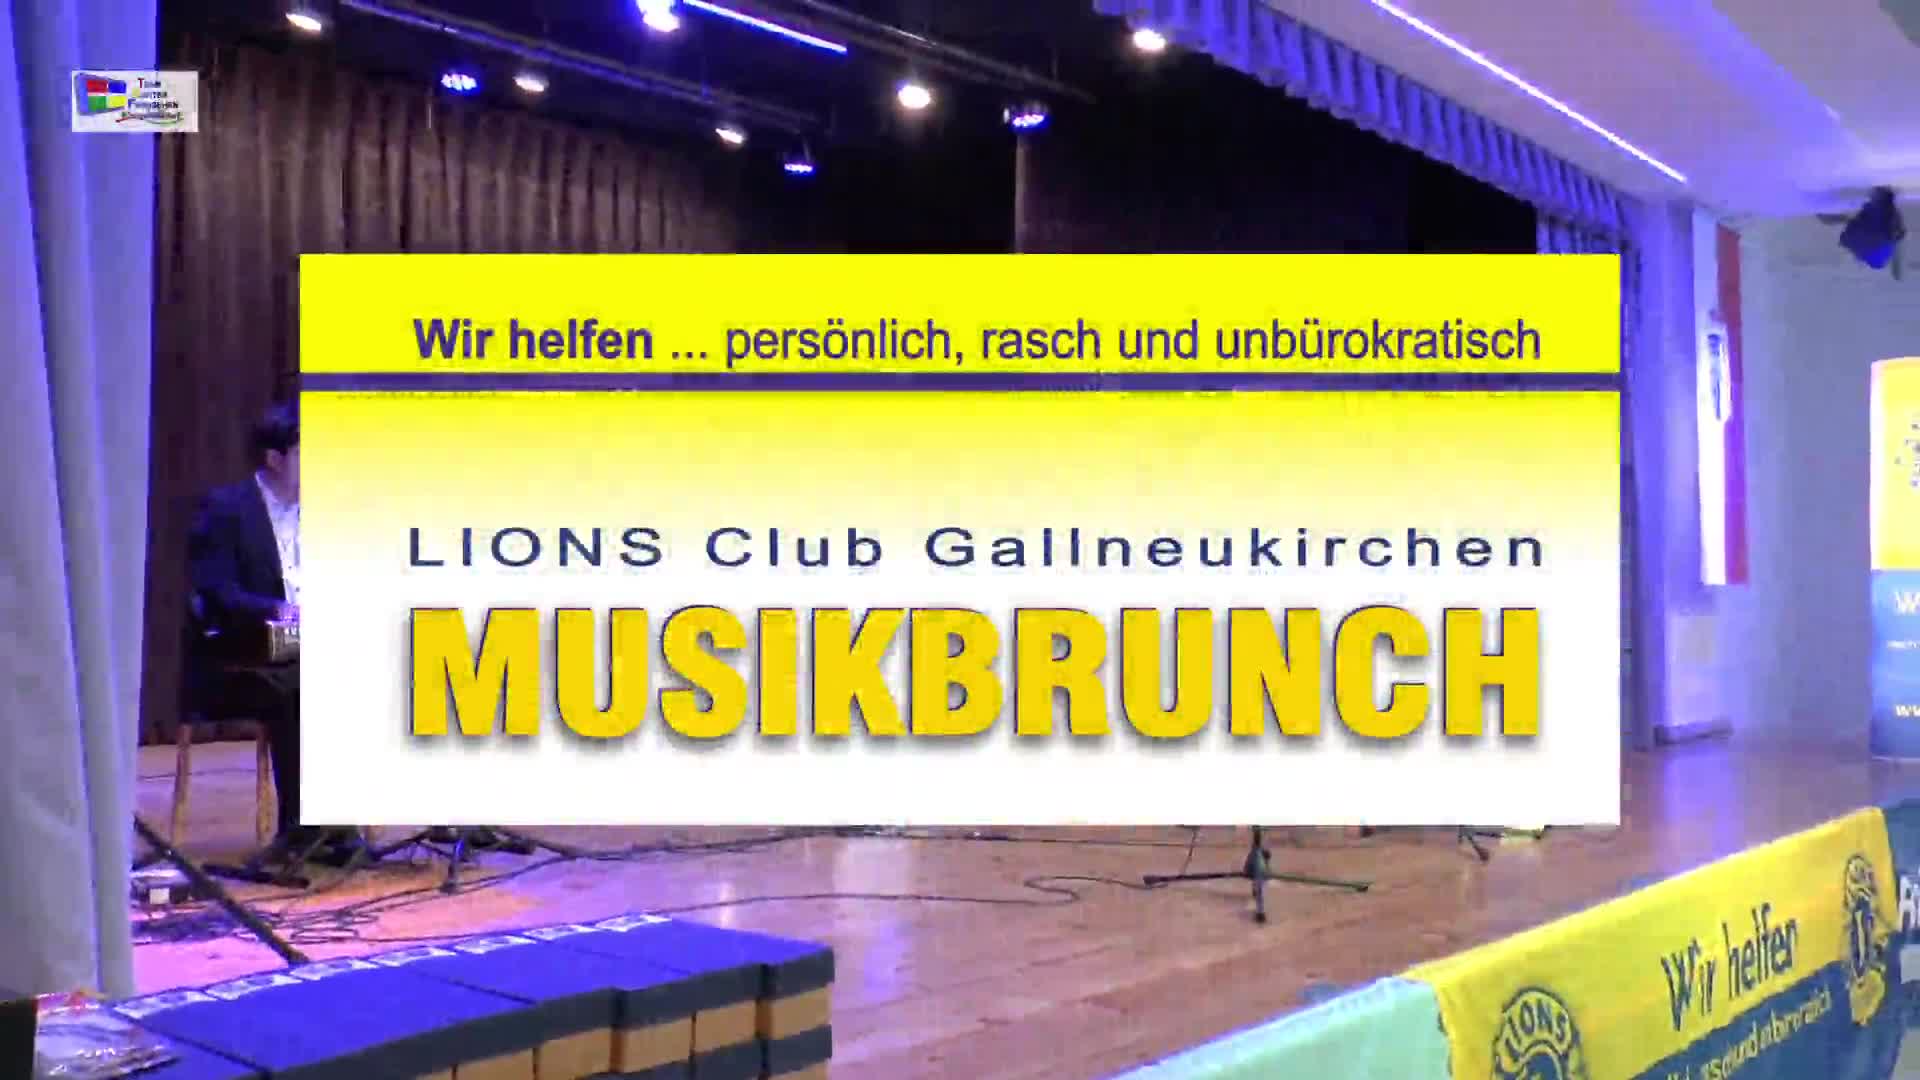 Lions Club Gallneukirchen - Musikbrunch